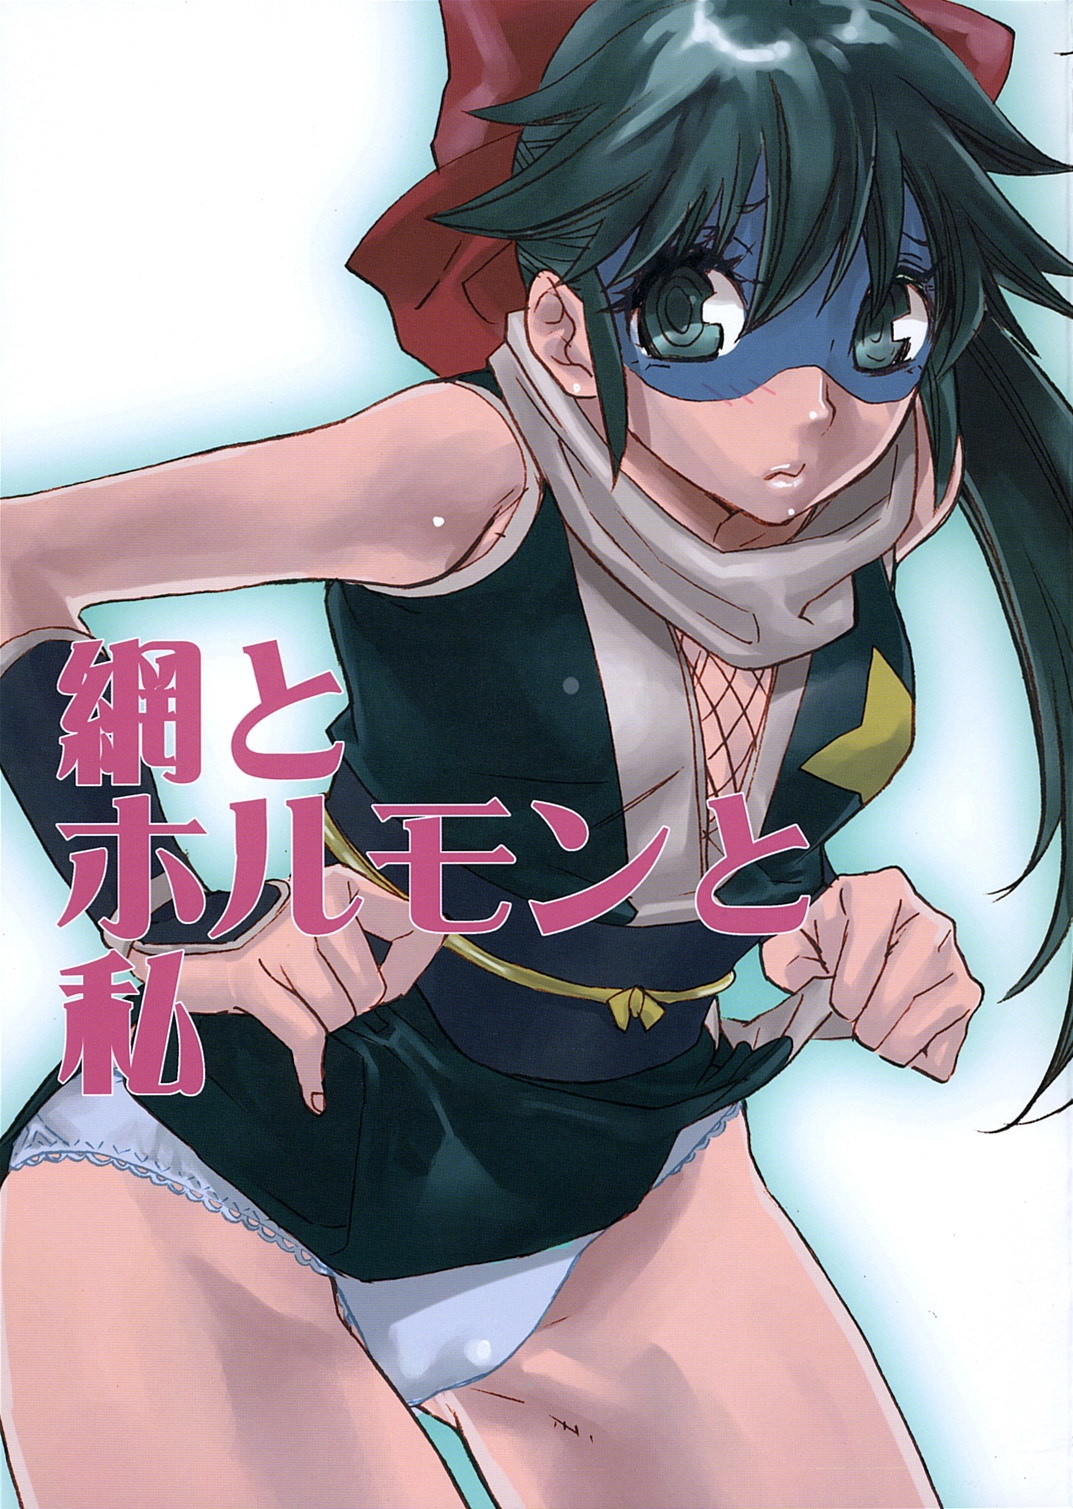 Ami to Hormone to Watashi keroro gunsou hentai manga